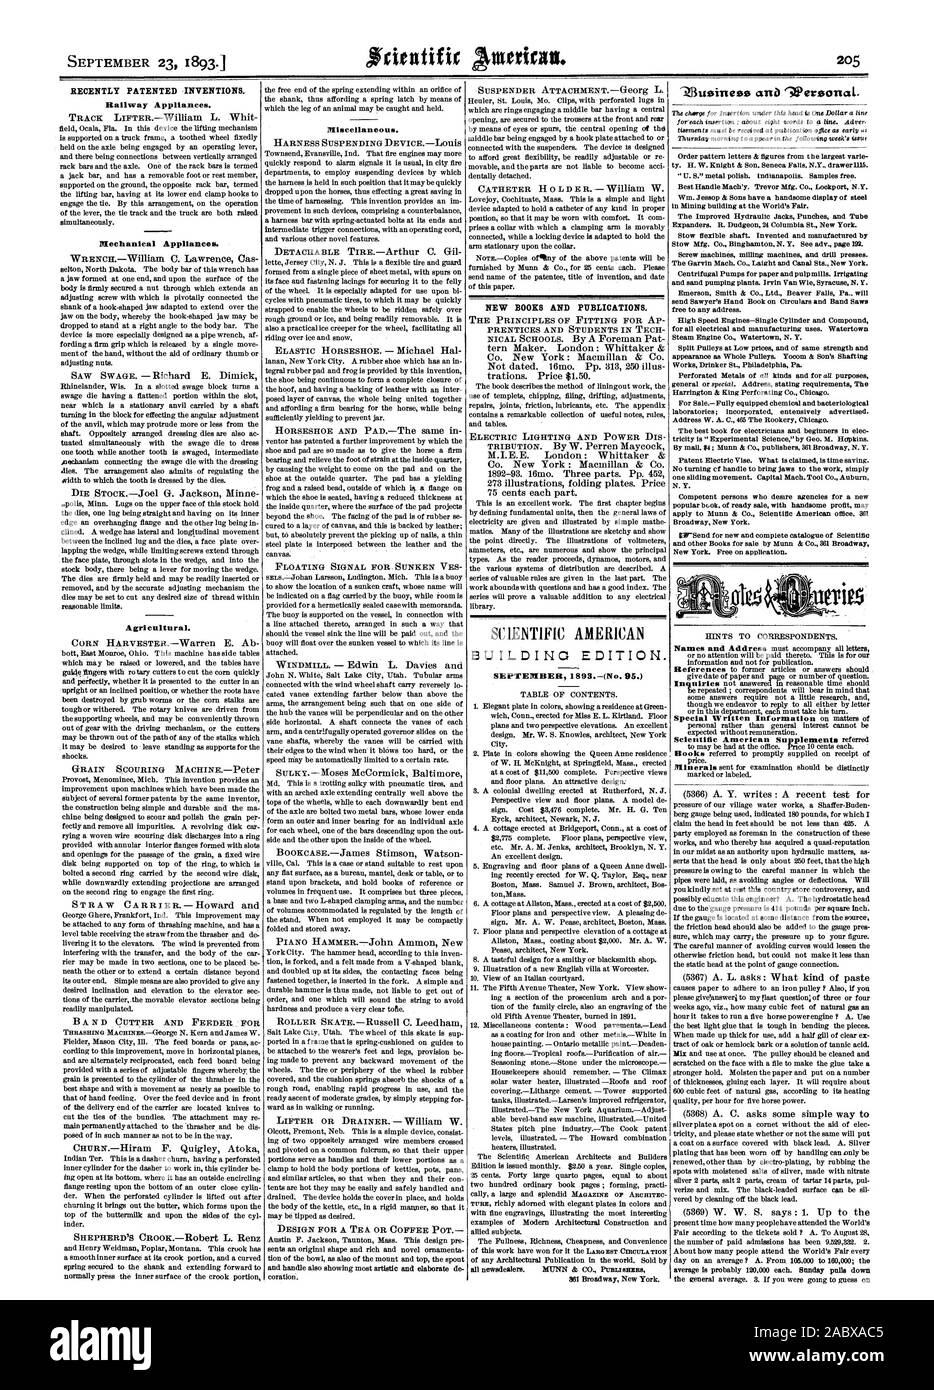 Il 23 settembre 1893. Recentemente invenzioni brevettate. Apparecchi di corridoio. Nuovi libri e pubblicazioni. Costruzione di edizione. Settembre 1893(n. 95.), Scientific American, 1893-09-23 Foto Stock